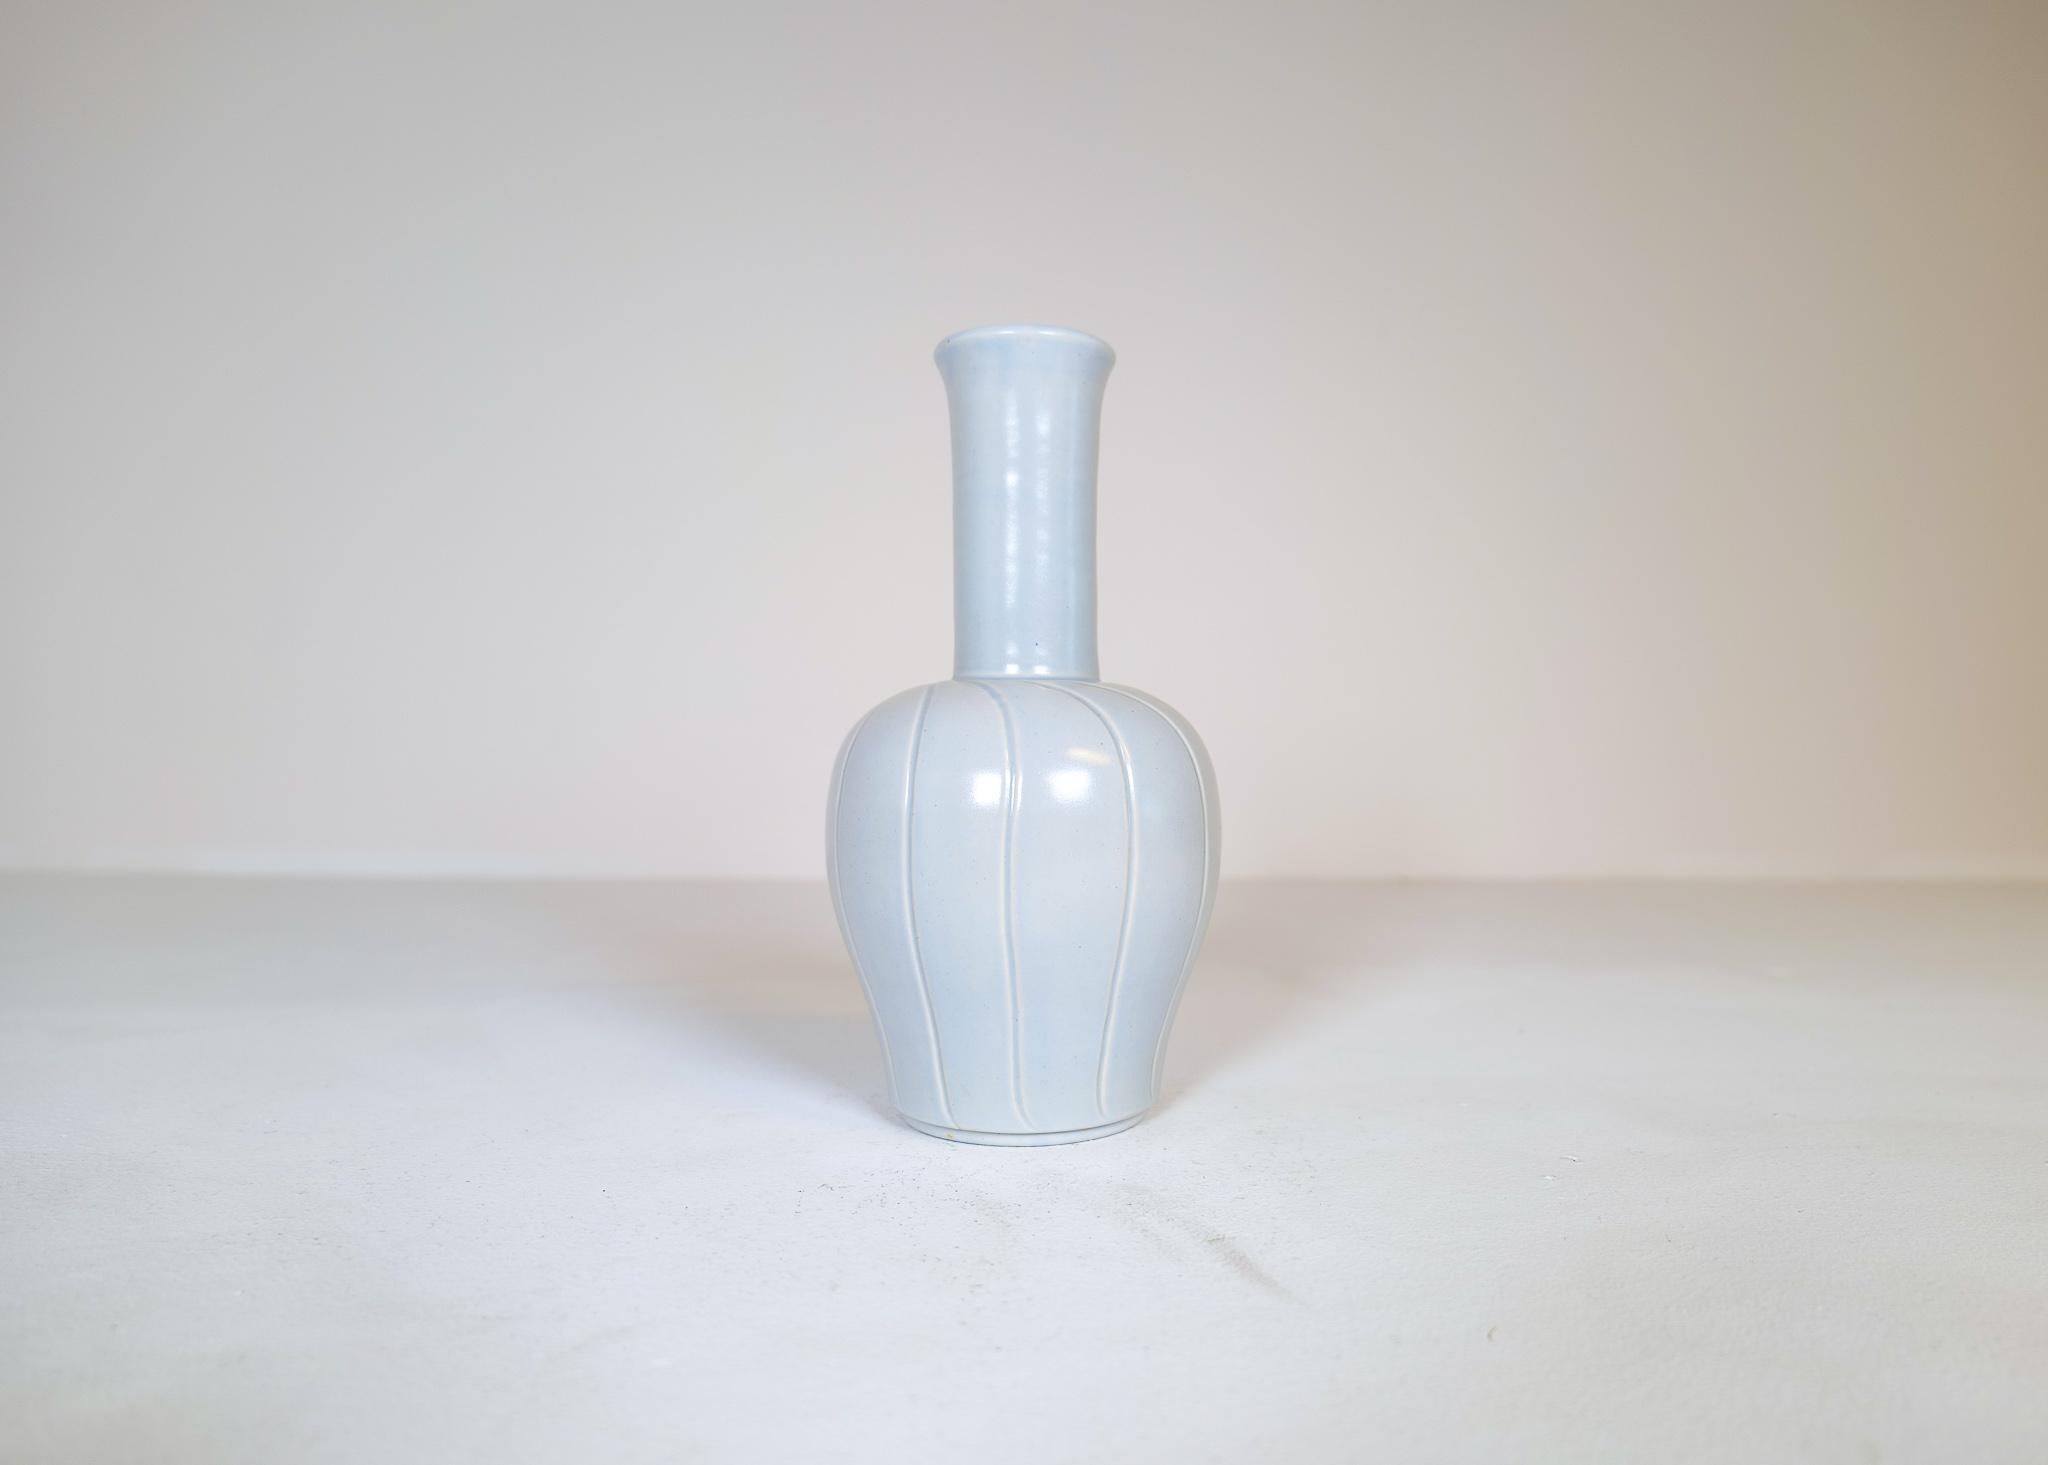 Wunderschöne Keramikvase, hergestellt in Schweden bei Bo Fajans und entworfen von Ewald Dahlskog im Jahr 1937.
Die wundervollen Wirbellinien und die skulpturale Form der Vase passen perfekt zu der herrlichen Glasur. 

Sehr guter Zustand.